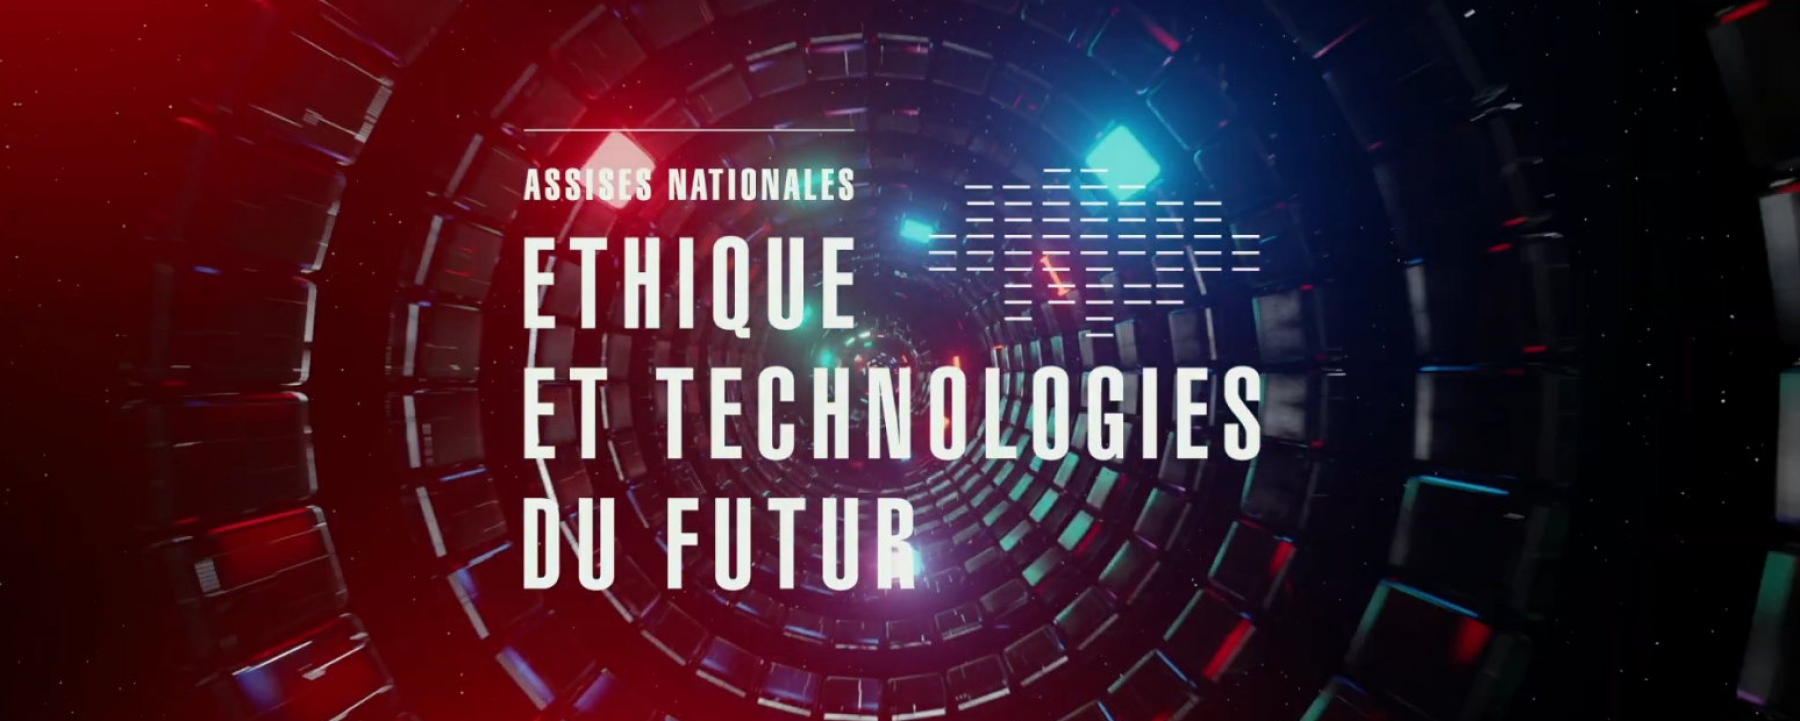 E-thique - Les Assises Éthique et technologies du futur, le 6 juillet par Ouest France et Laval Virtual